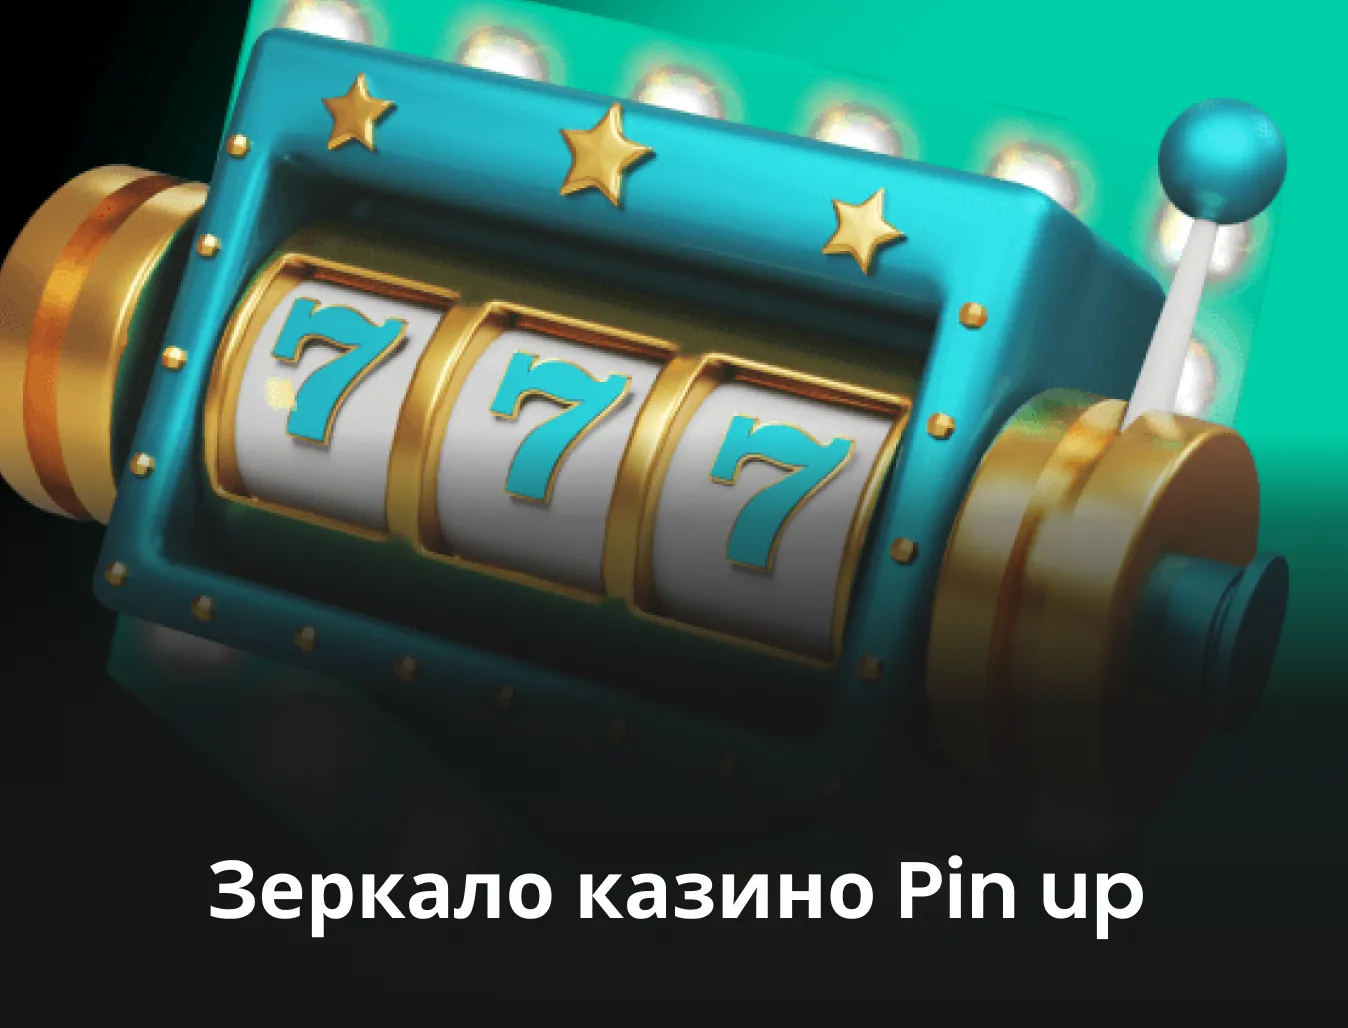 Поиск клиентов с помощью pin-up казино играть Part A